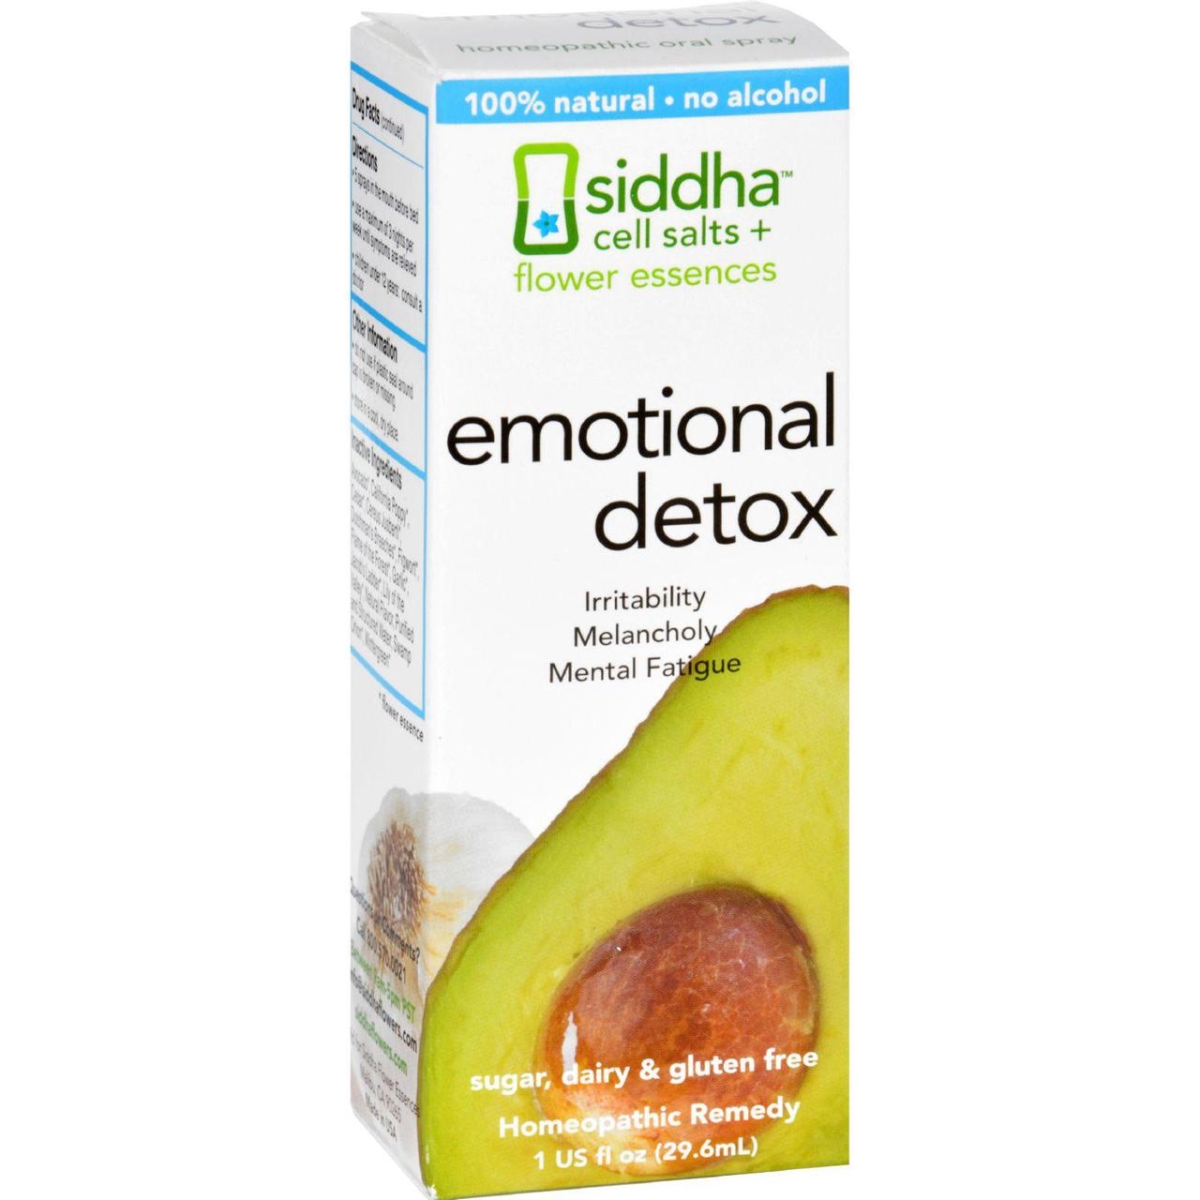 Picture of Sidda Flower Essences HG1557032 1 fl oz Emotional Detox